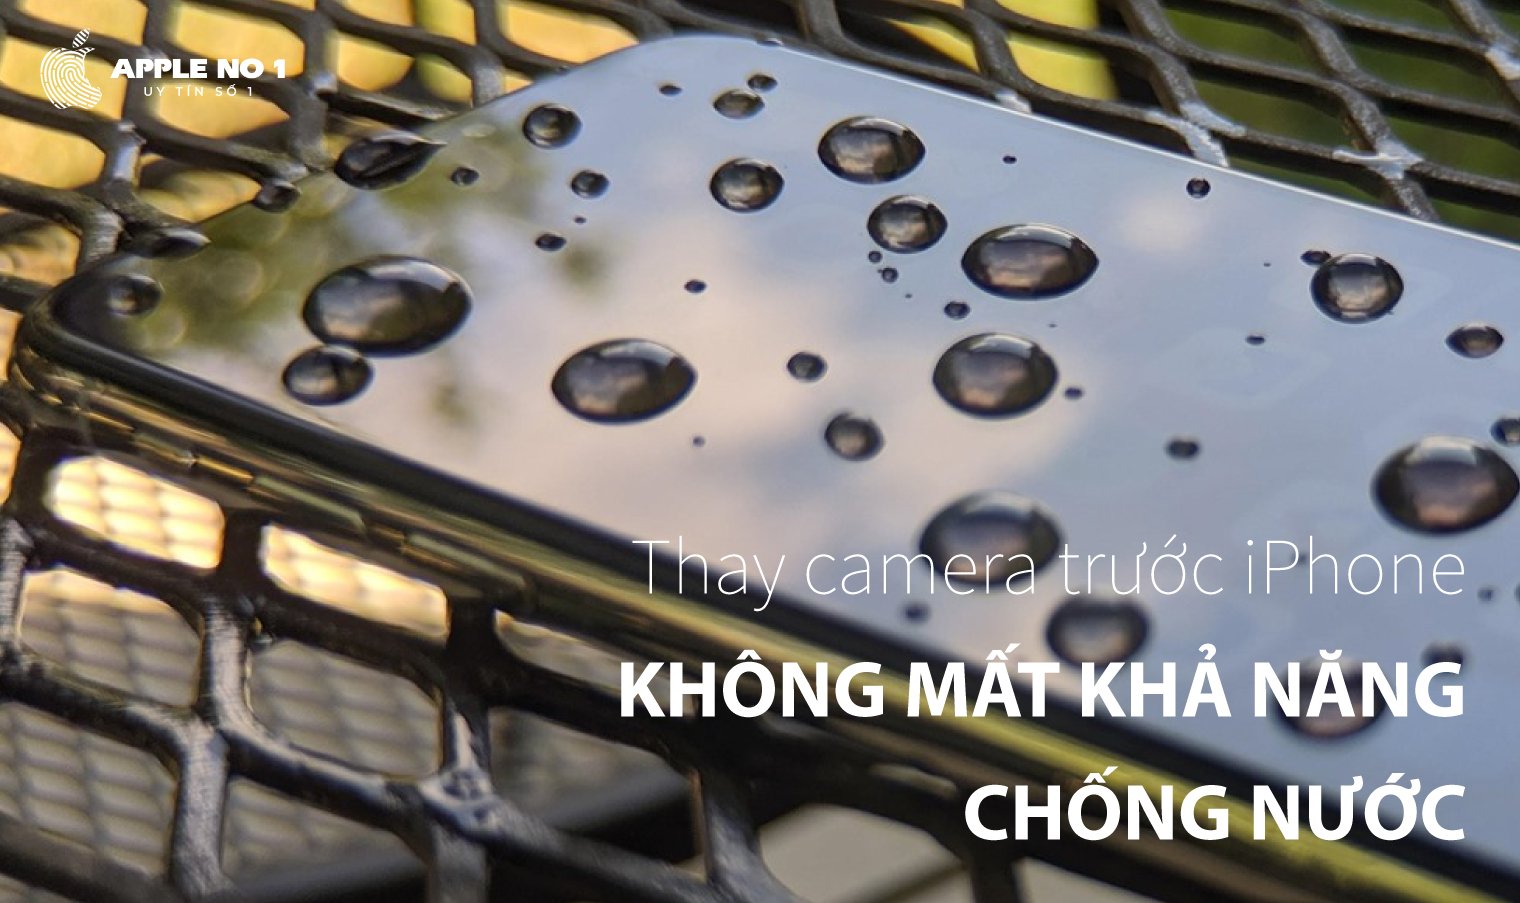 thay camera truoc iphone 11 pro max co mat chong nuoc khong?